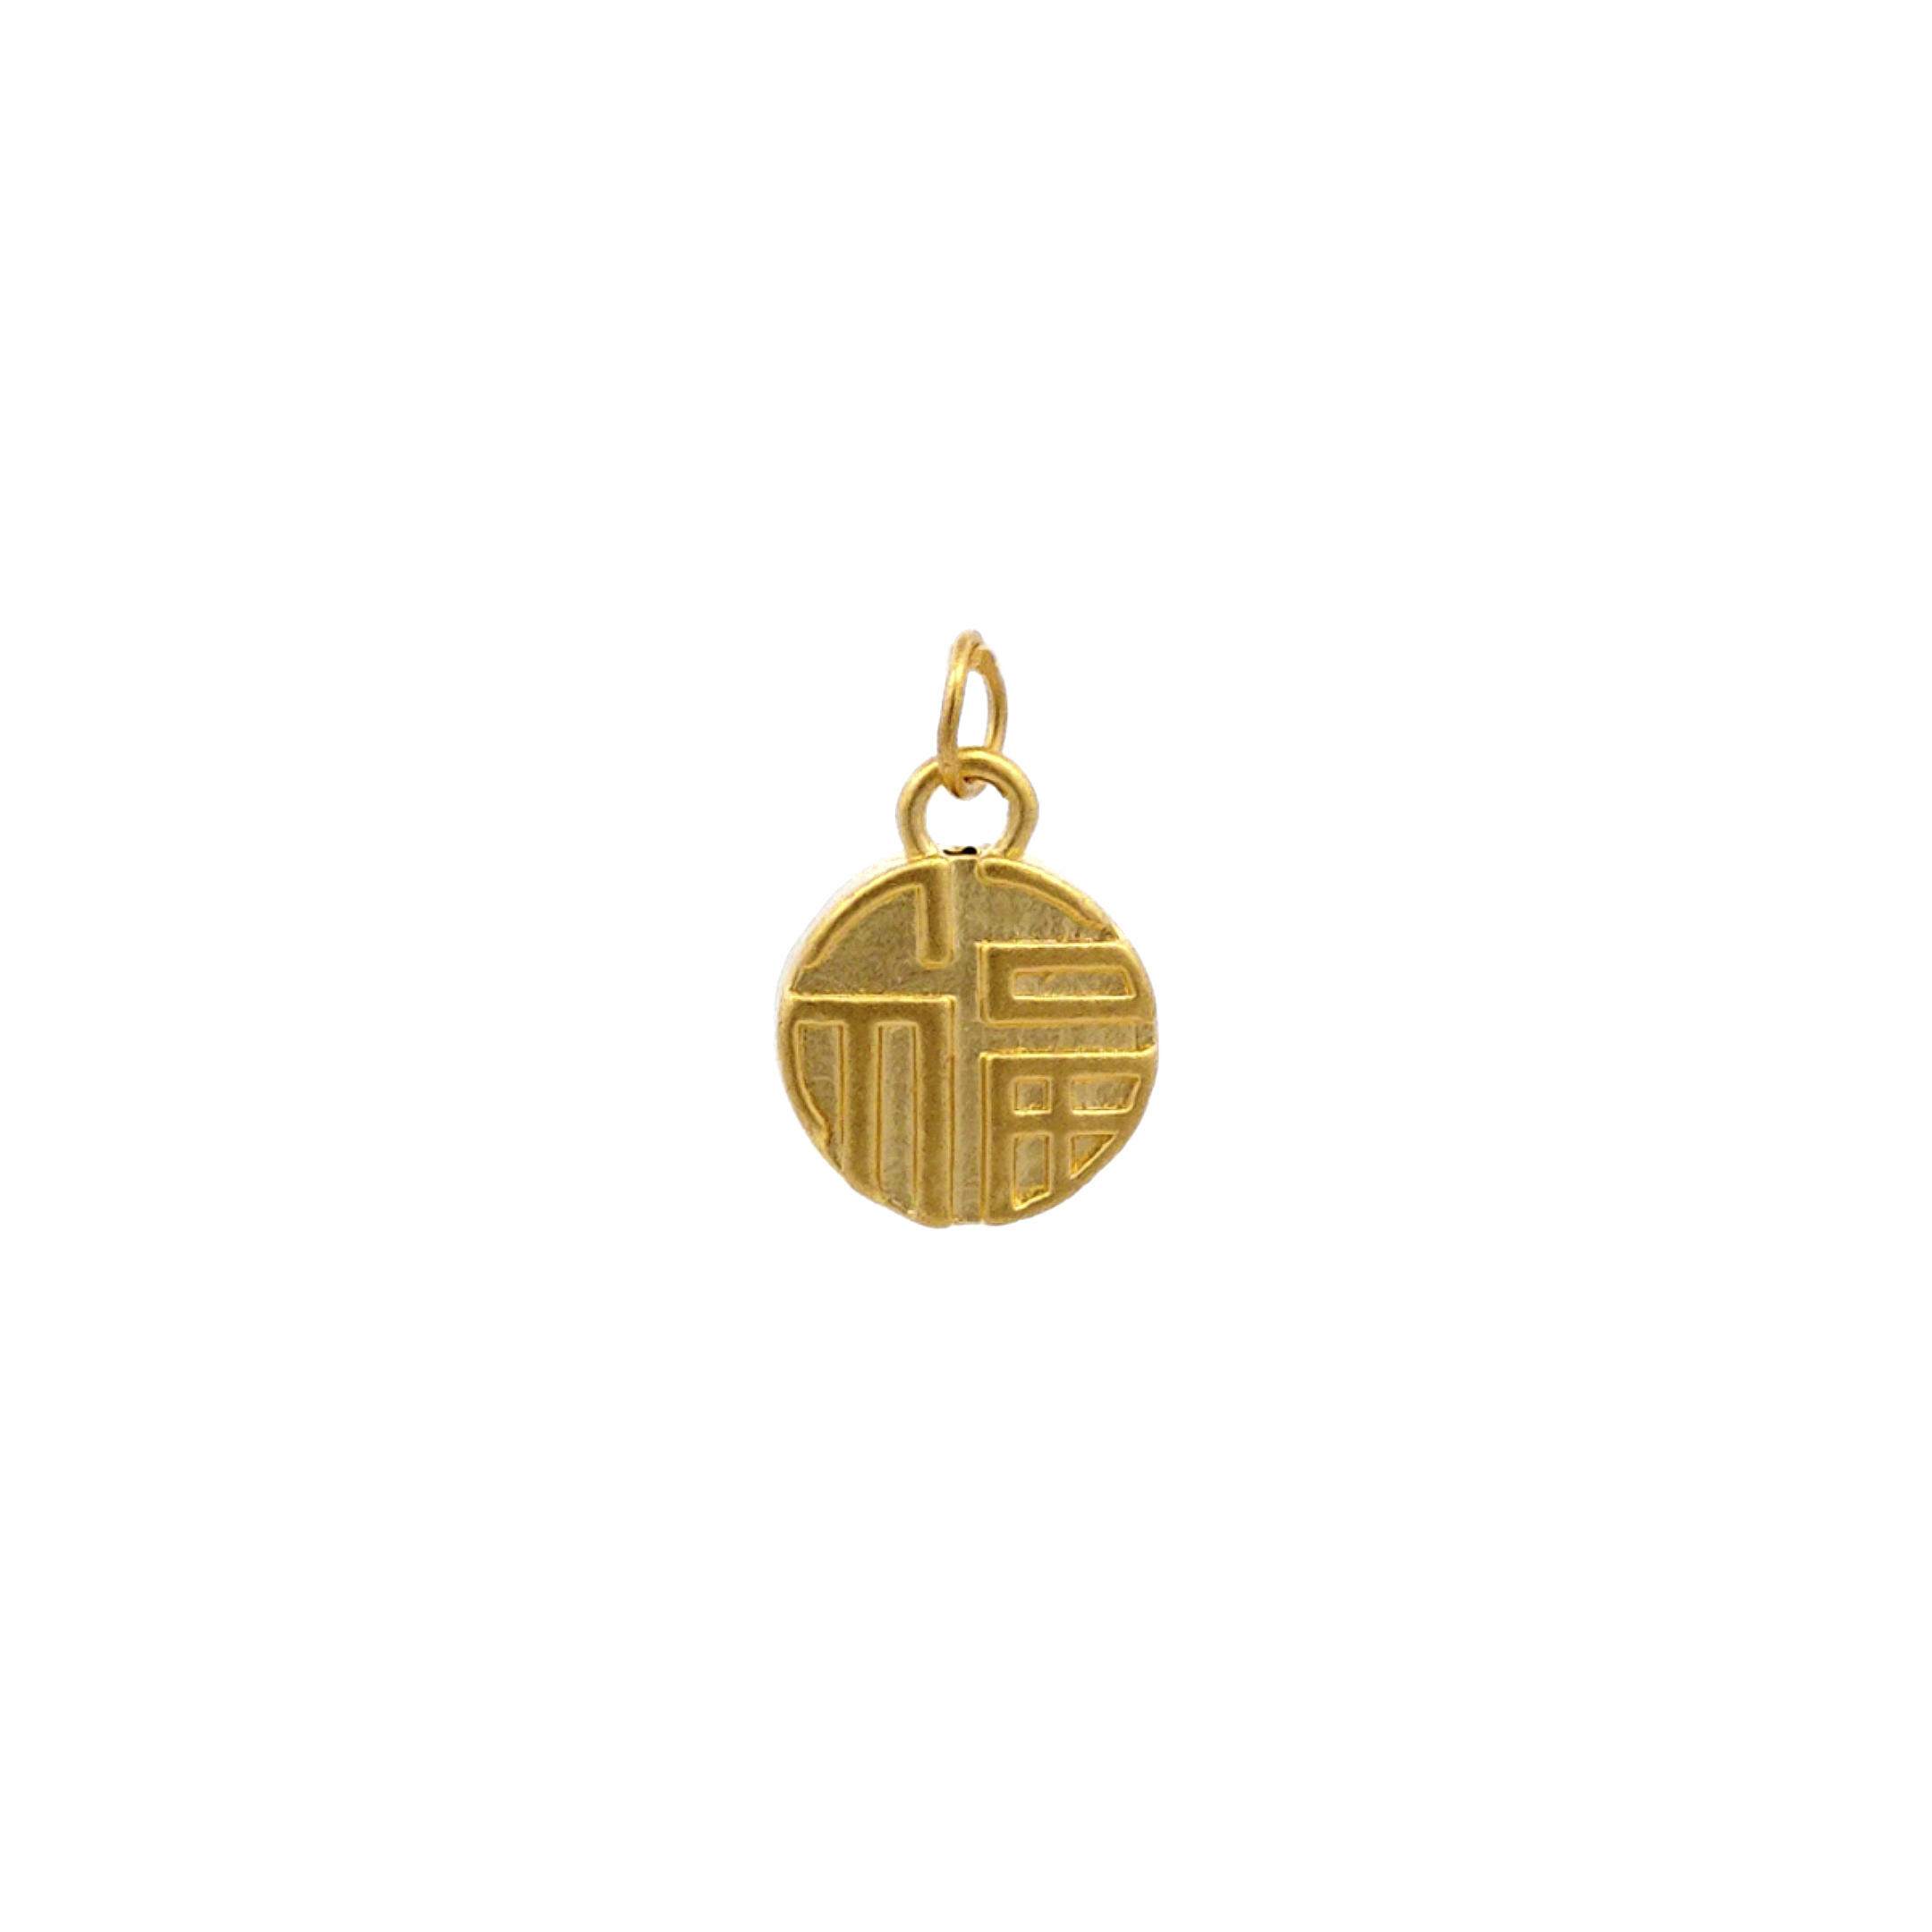 TIANSI 999 (24K) Gold Fortune Circle Pendant